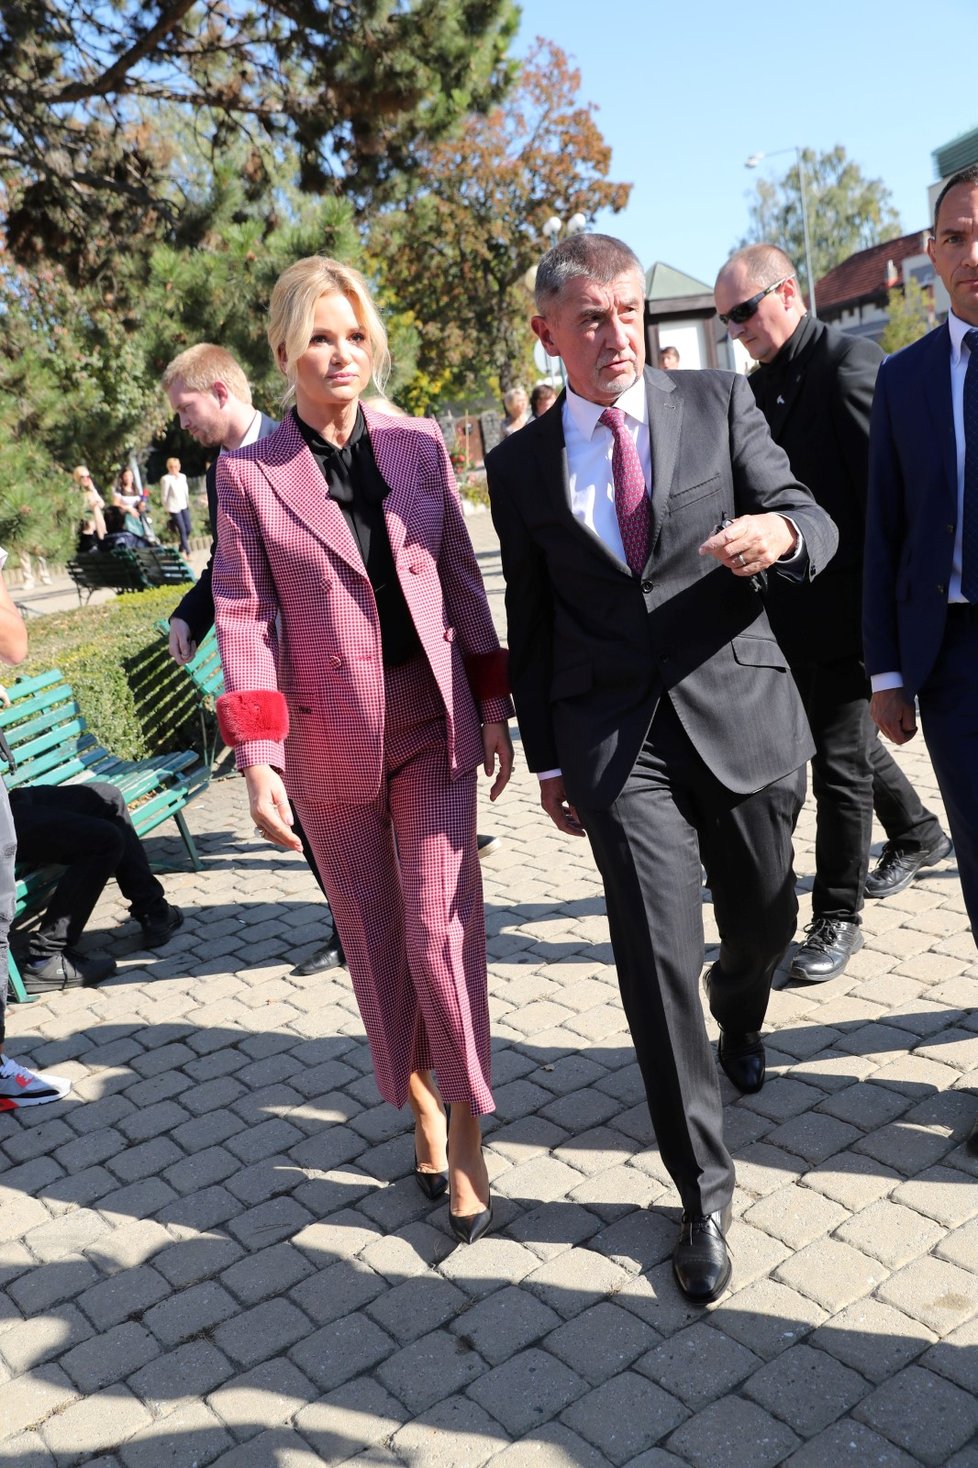 Premiér Andrej Babiš se dostavil společně se svou ženou ke komunálním volbám 2018